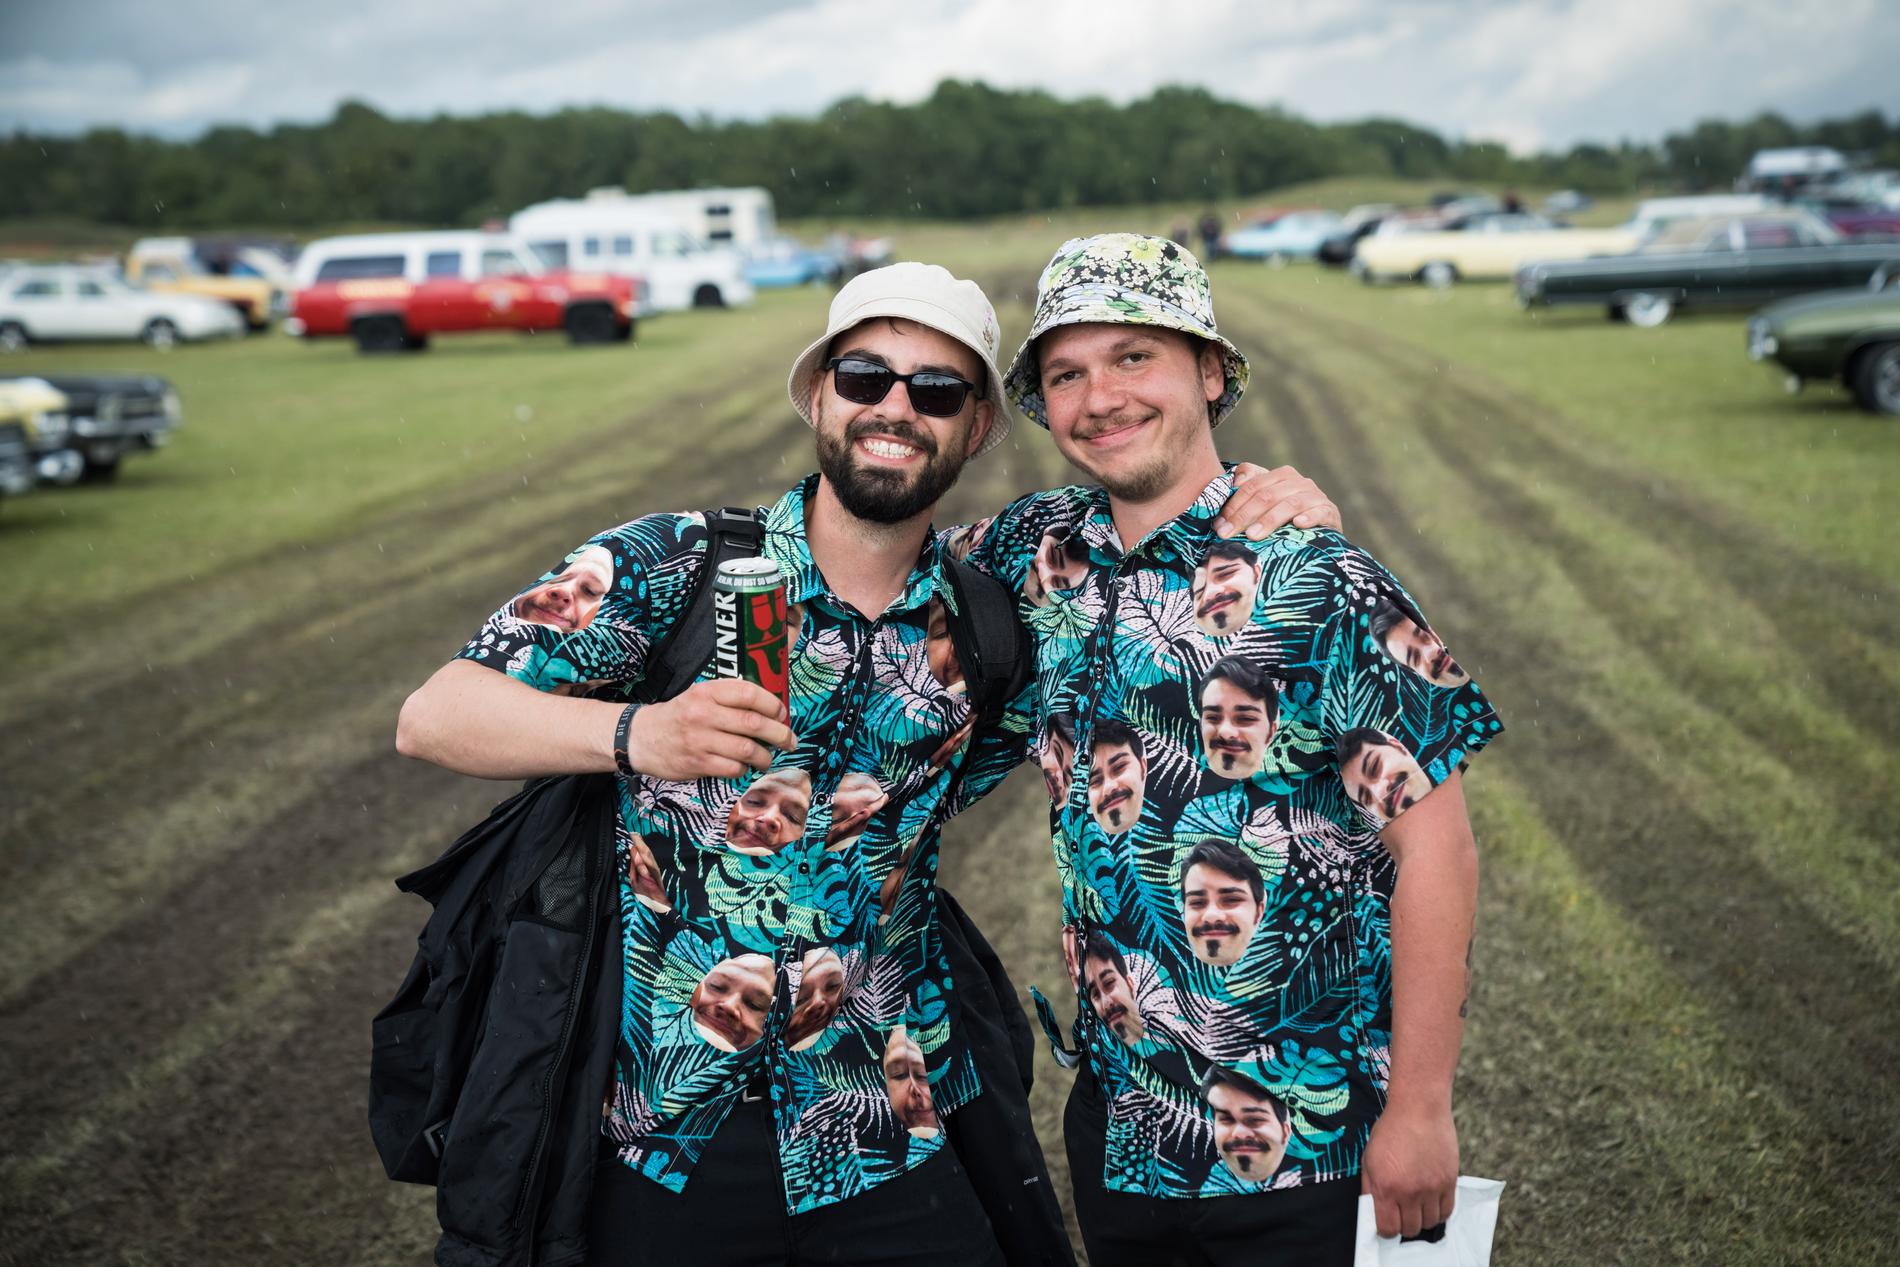 Jacob Uthemann, 28, och Lennart Erdmann, 28, från Tyskland. De har på sig skjortor med bilder på varandra, som de fått i present av Lennarts mamma.